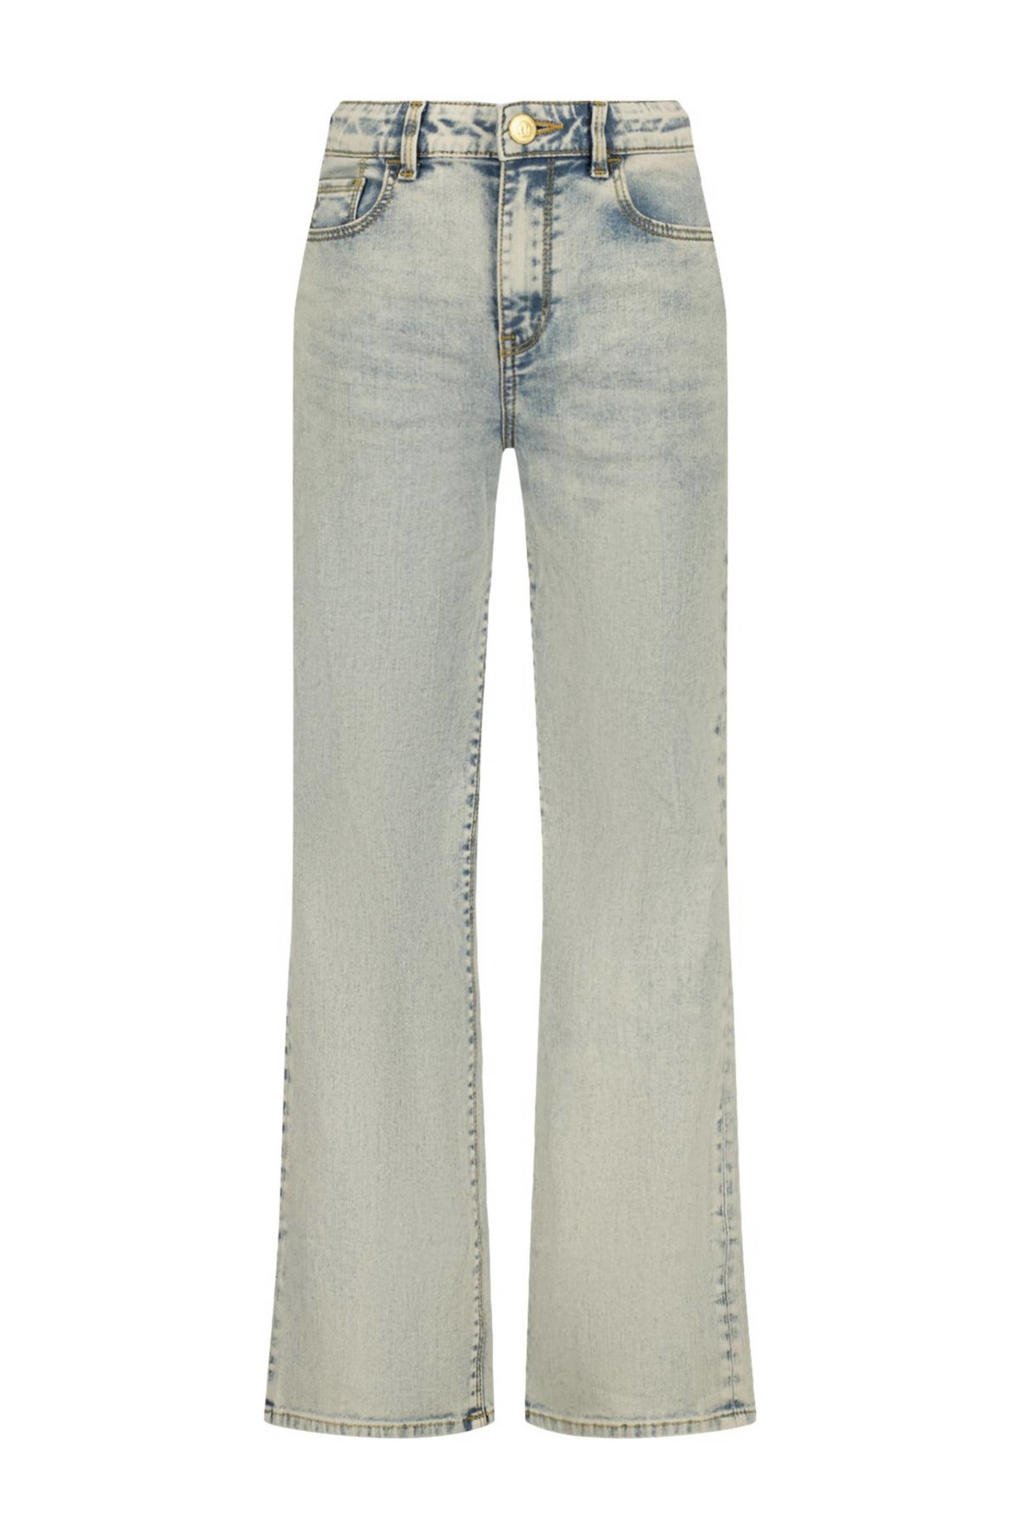 Raizzed wide leg jeans Mississippi light blue stone